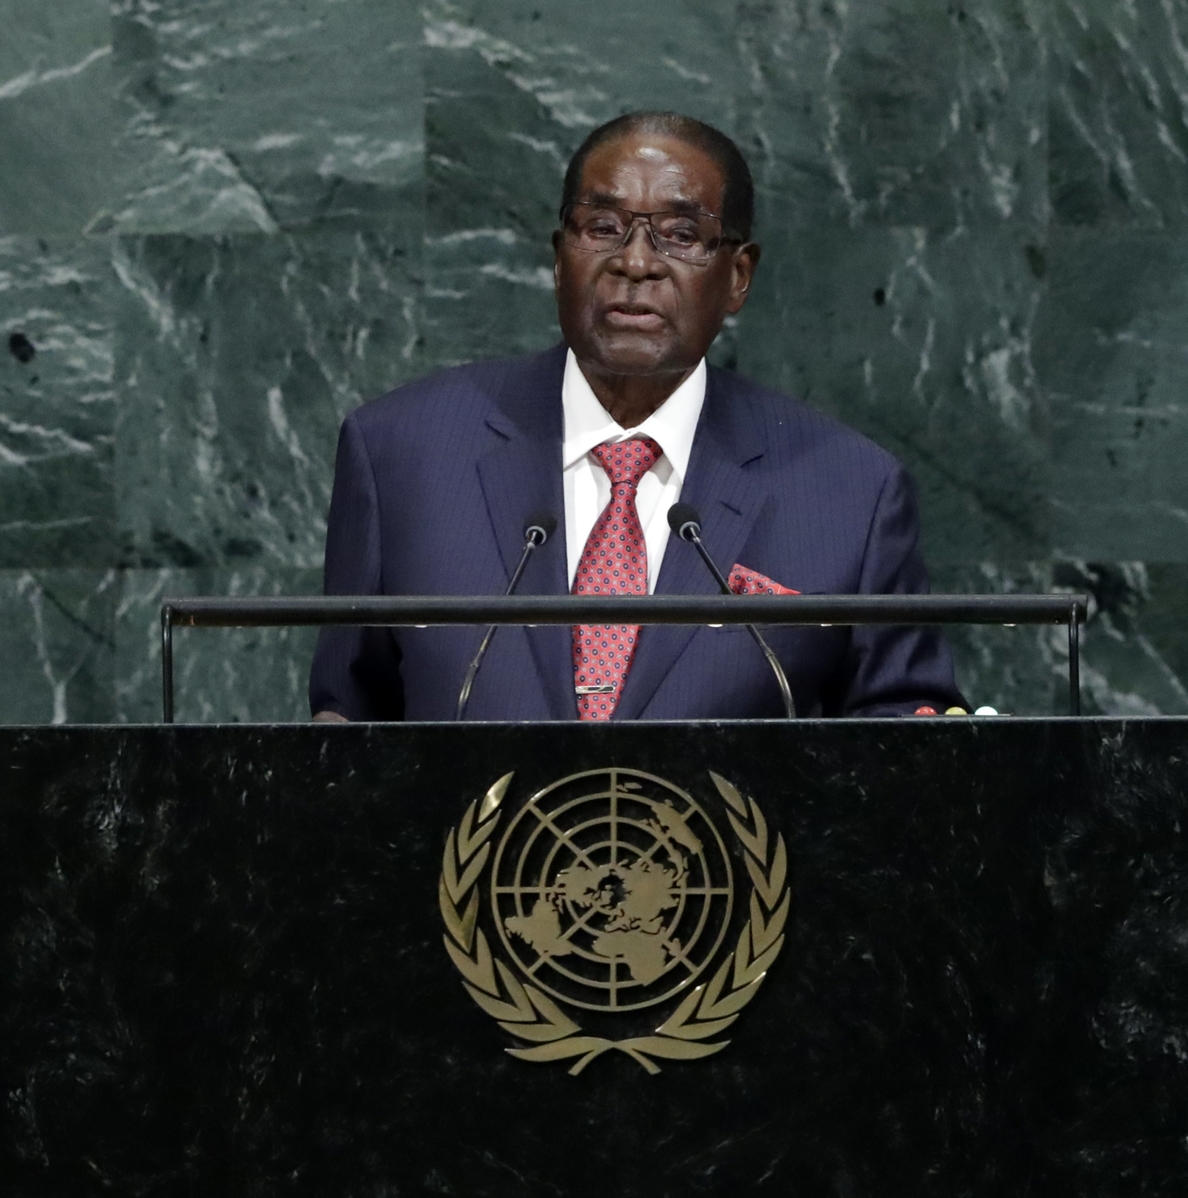 Un portavoz militar desmiente el golpe contra Mugabe y asegura que está a salvo